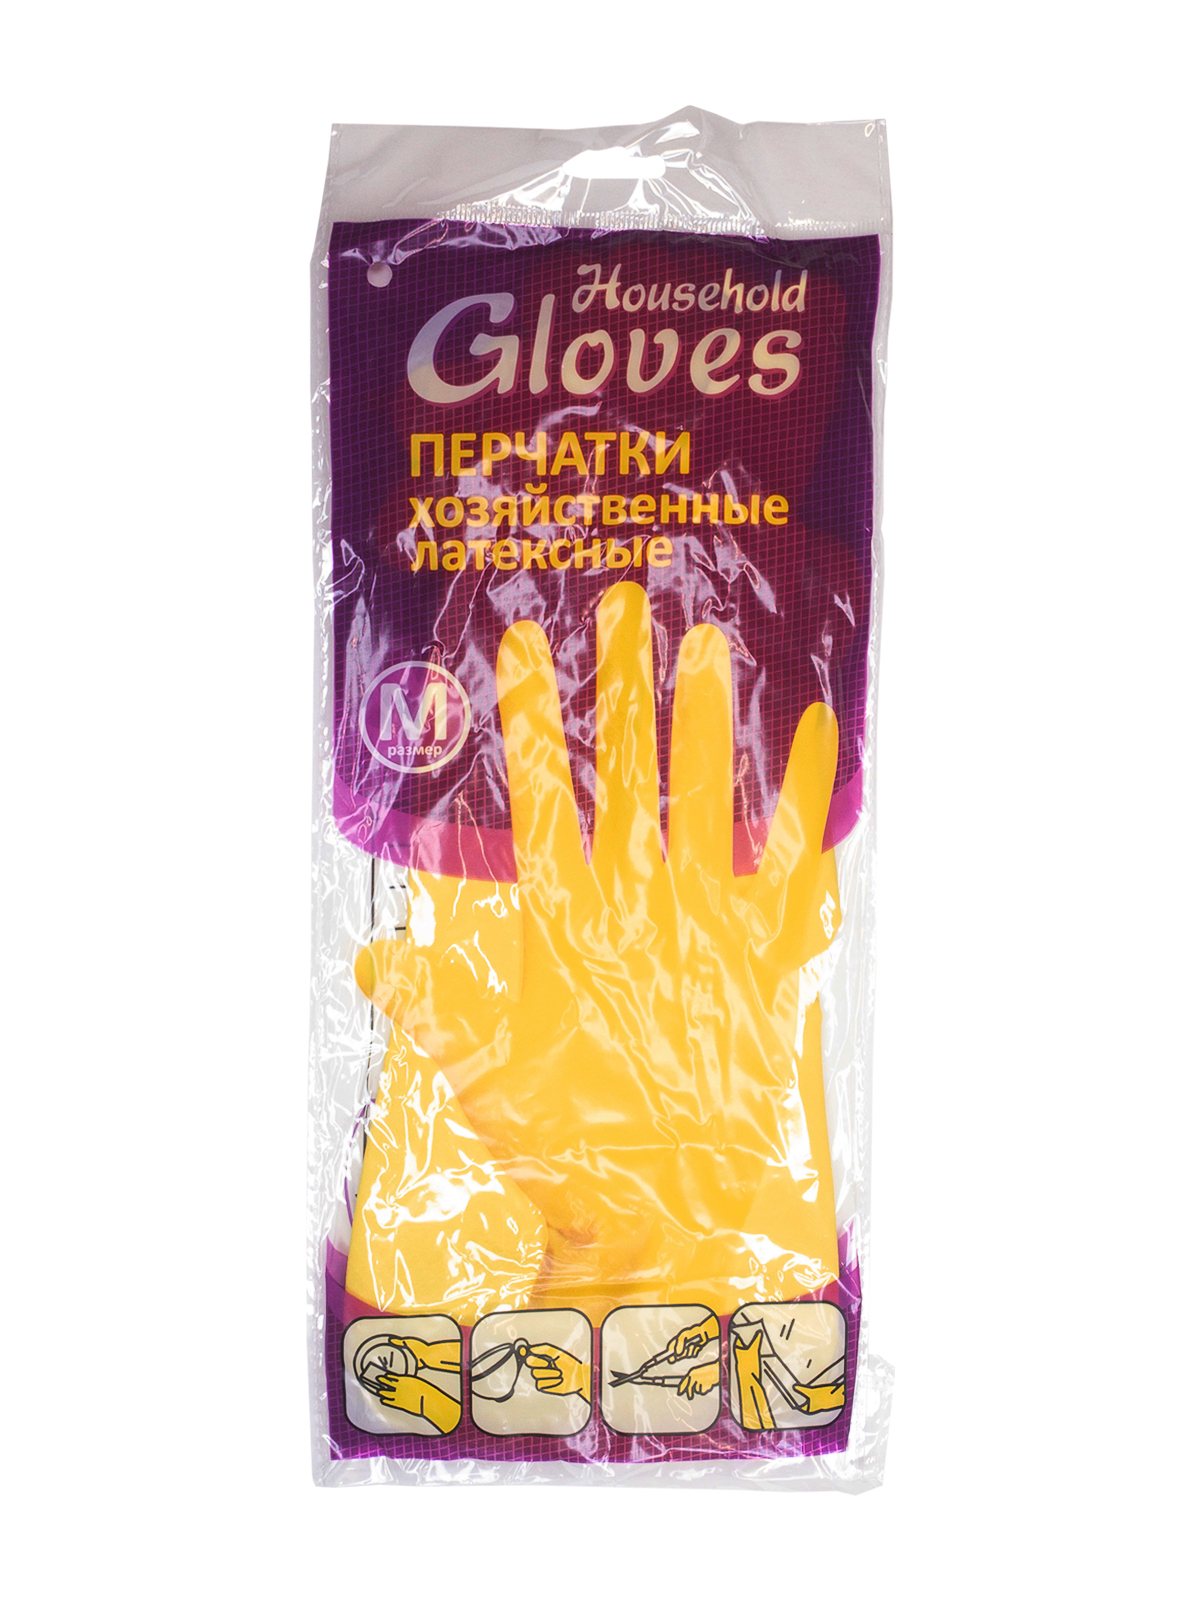 Перчатки  Household Gloves. латексные хозяйственные,желтые, М,240/12  KHL002/ОРТ17